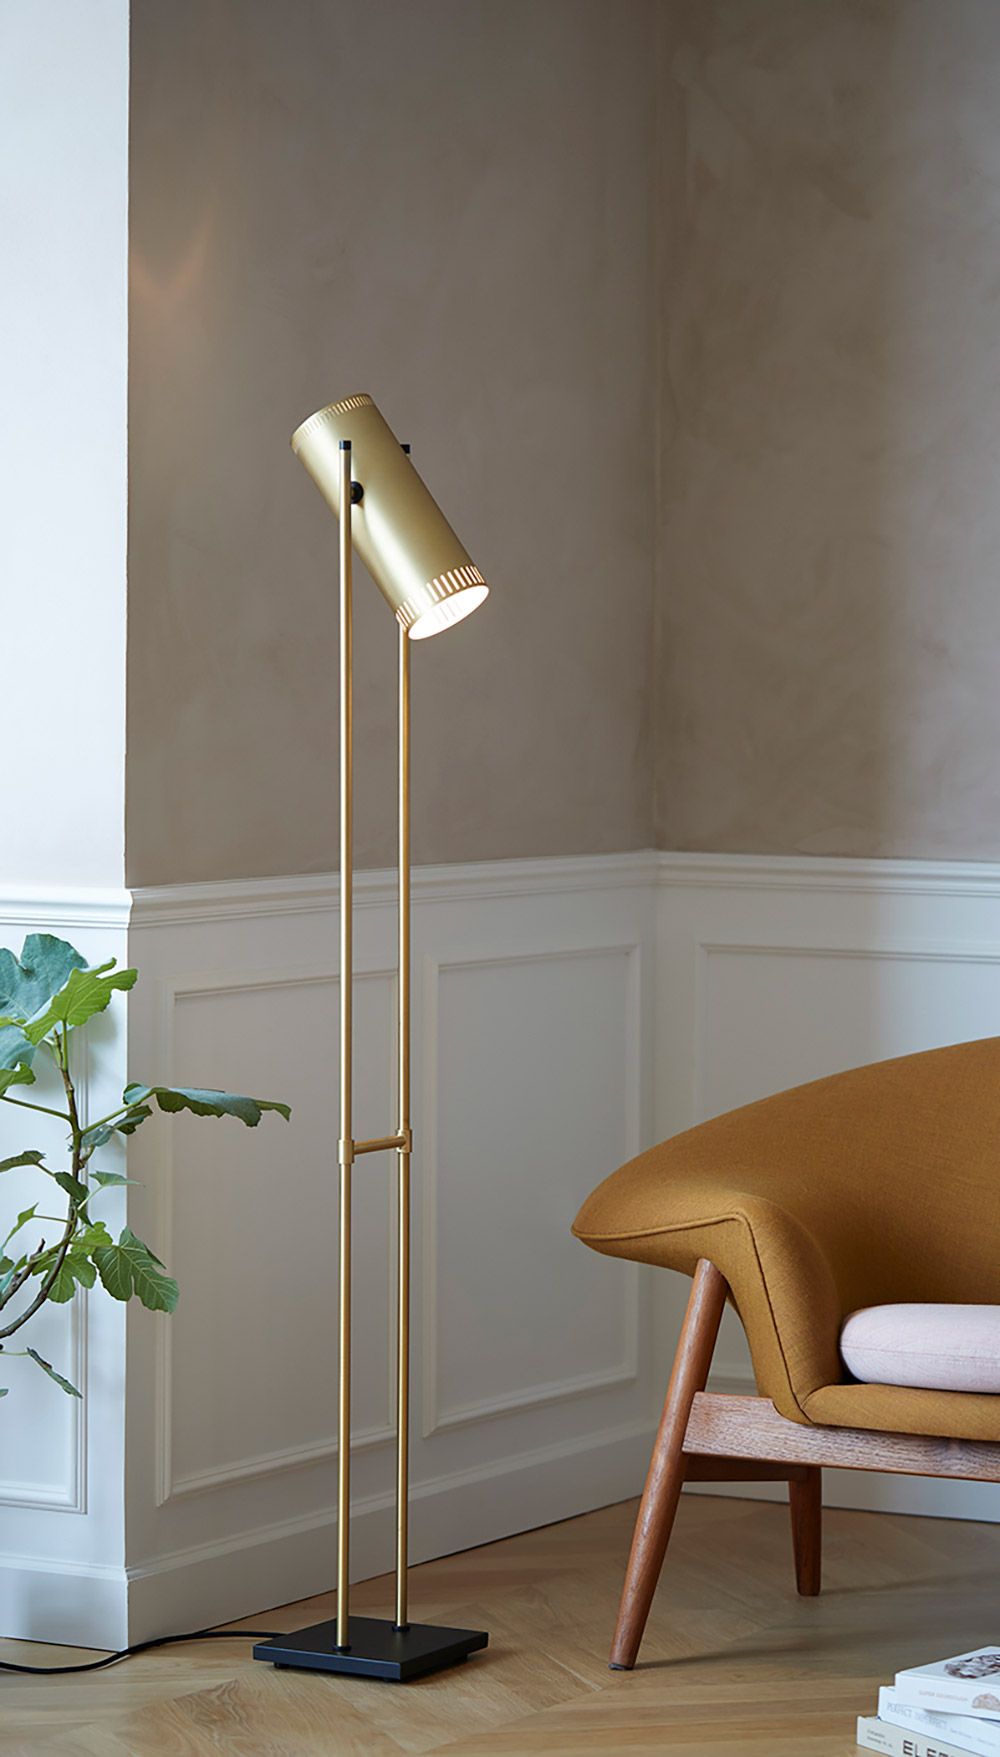 Inspiration til lamper og belysning i hjemmet | Byflou.com